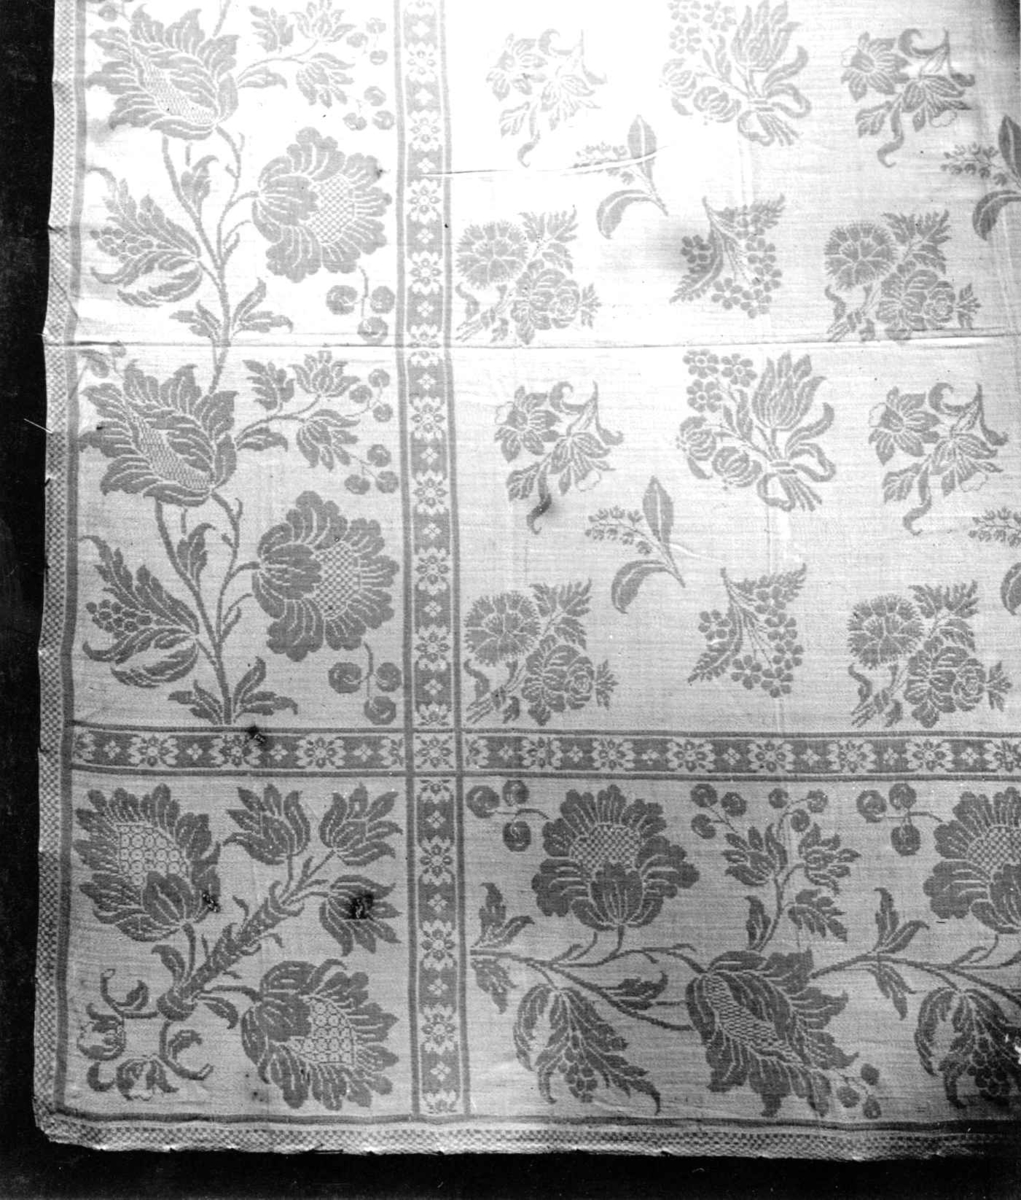 Hvit damaskduk med mønster av strøblomster, blomsterrankebord. Antagelig fra Tyskland slutten av 1700-tallet.